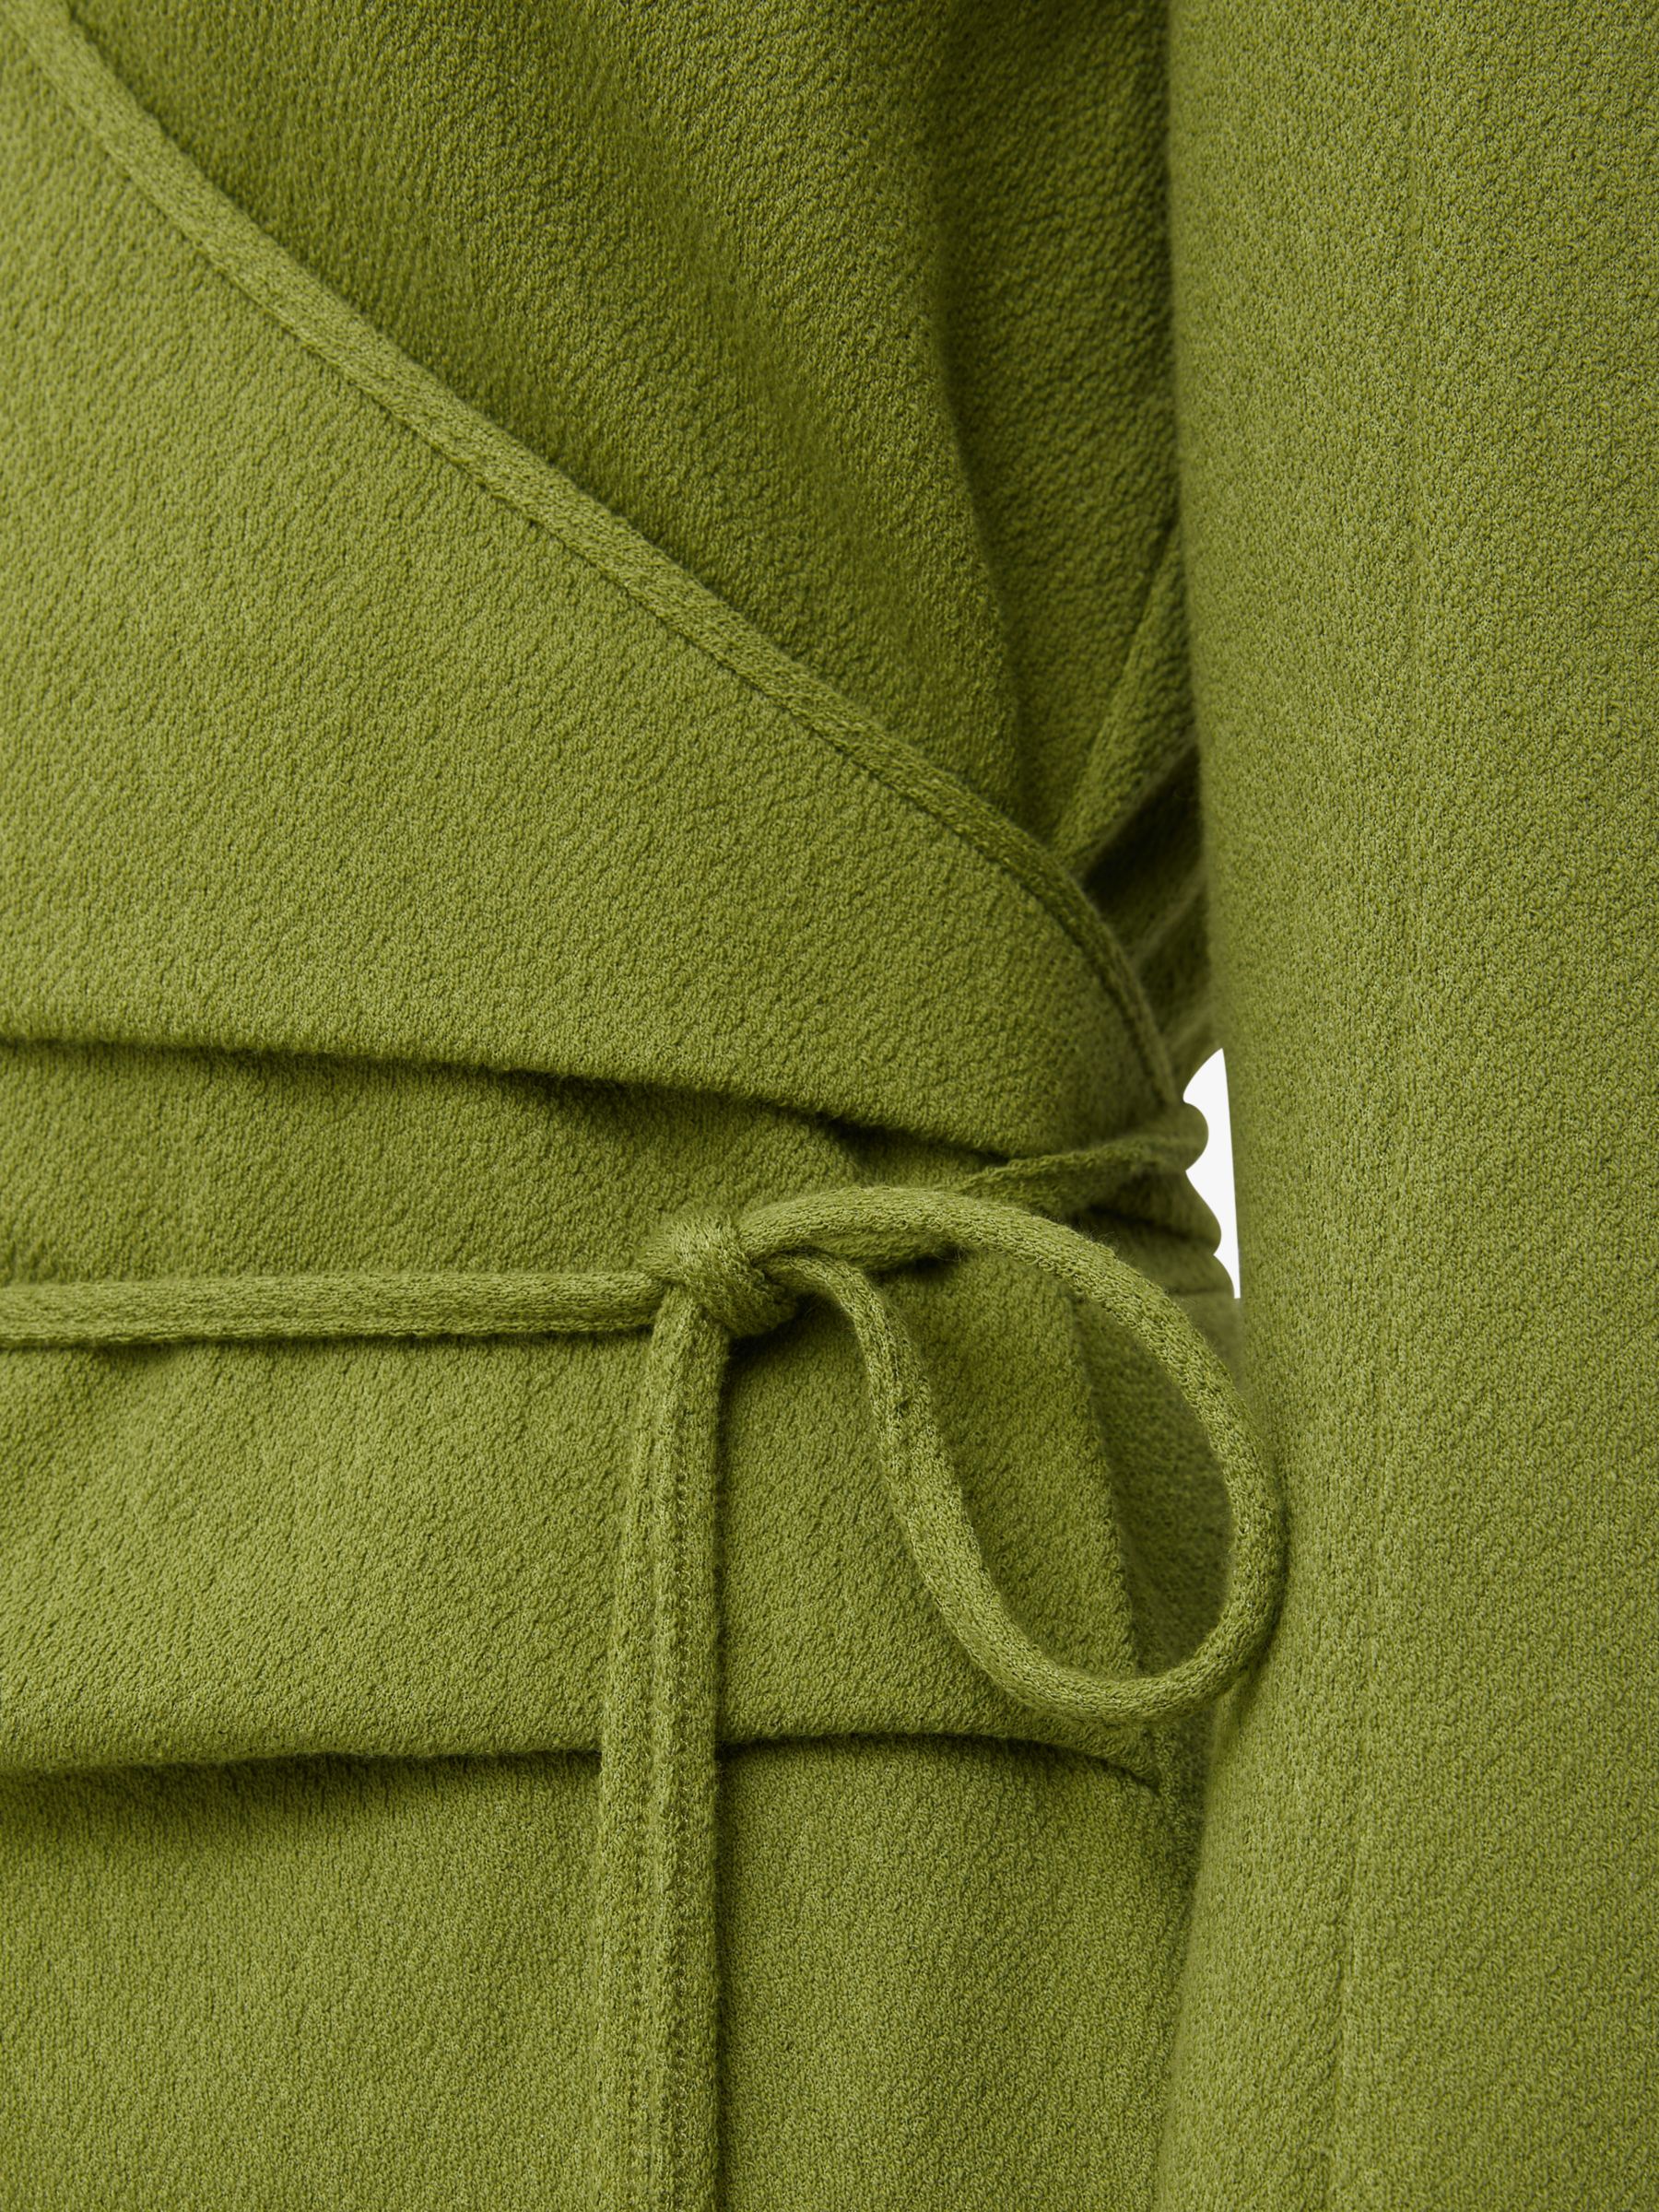 Jigsaw Textured Jersey Wrap Dress, Green, M